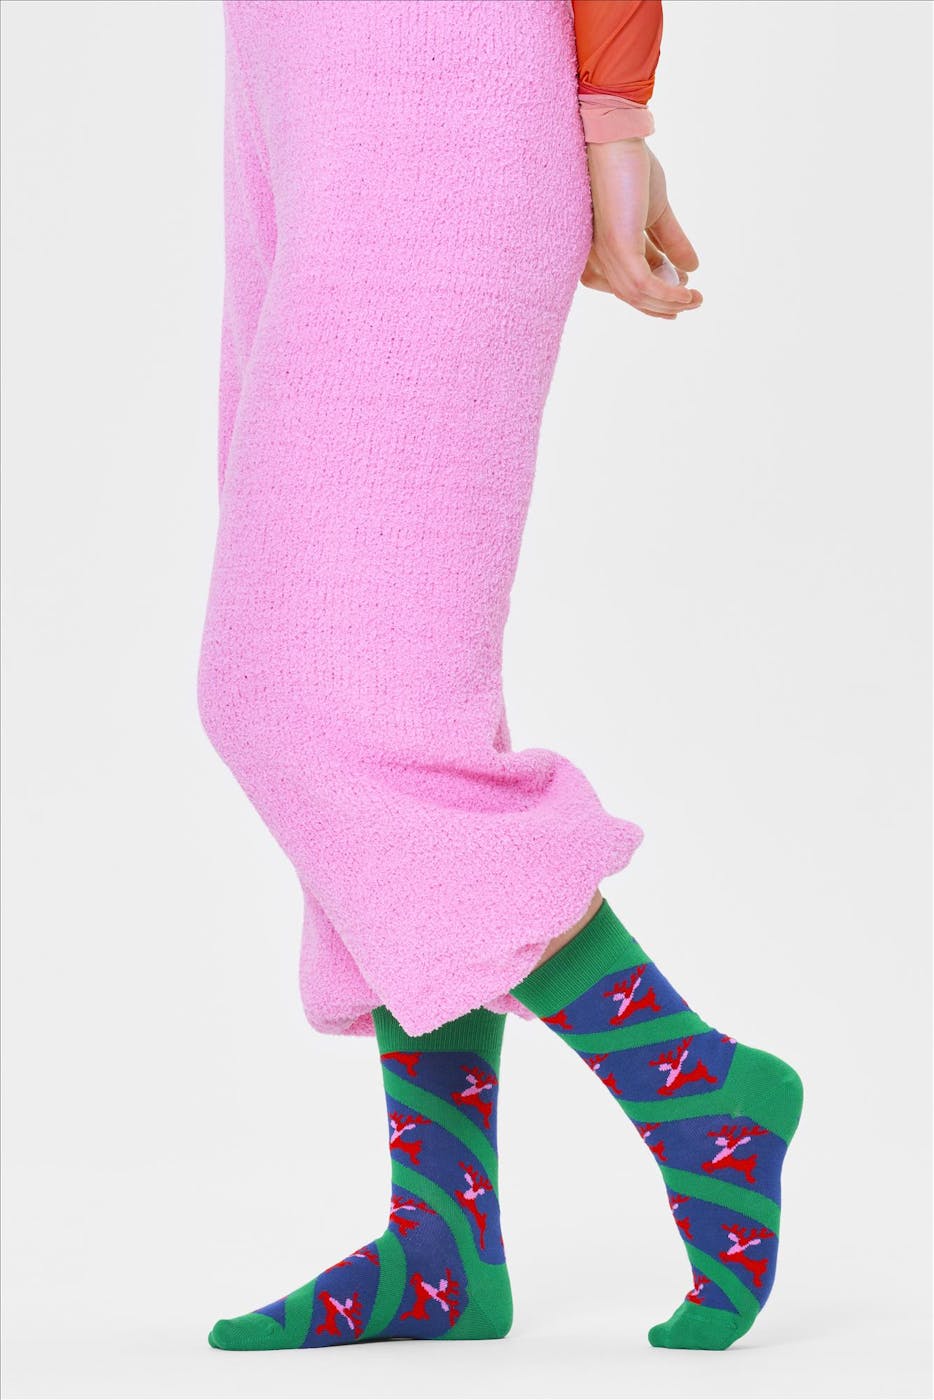 Happy Socks - Groene Reindeer sokken, maat: 41-46